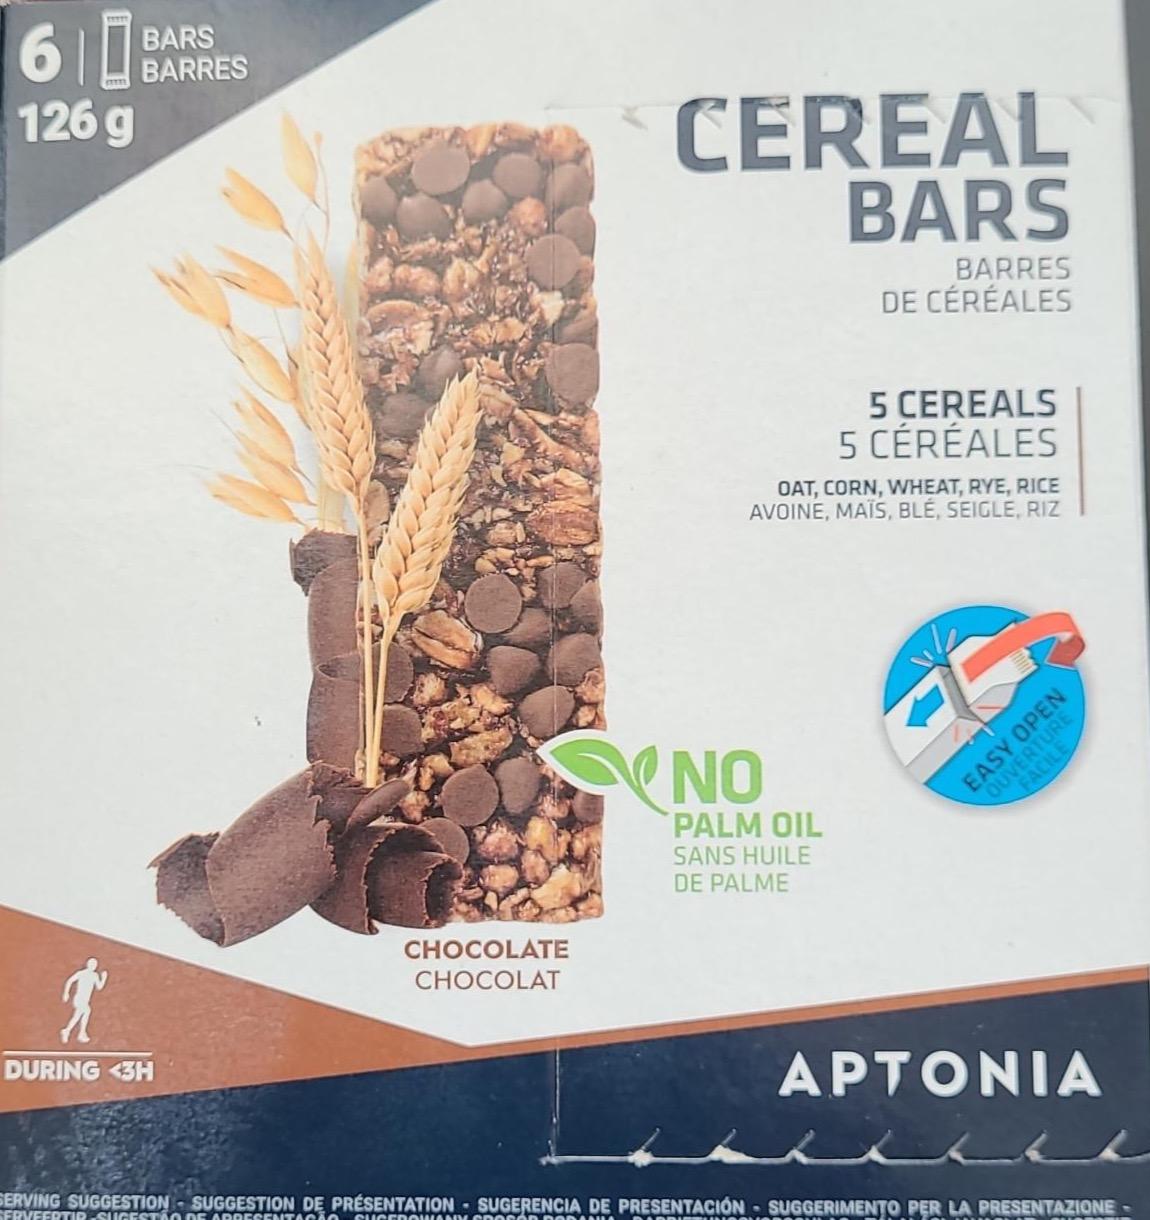 Zdjęcia - Cereal Bars 5 cereals Chocolate Aptonia